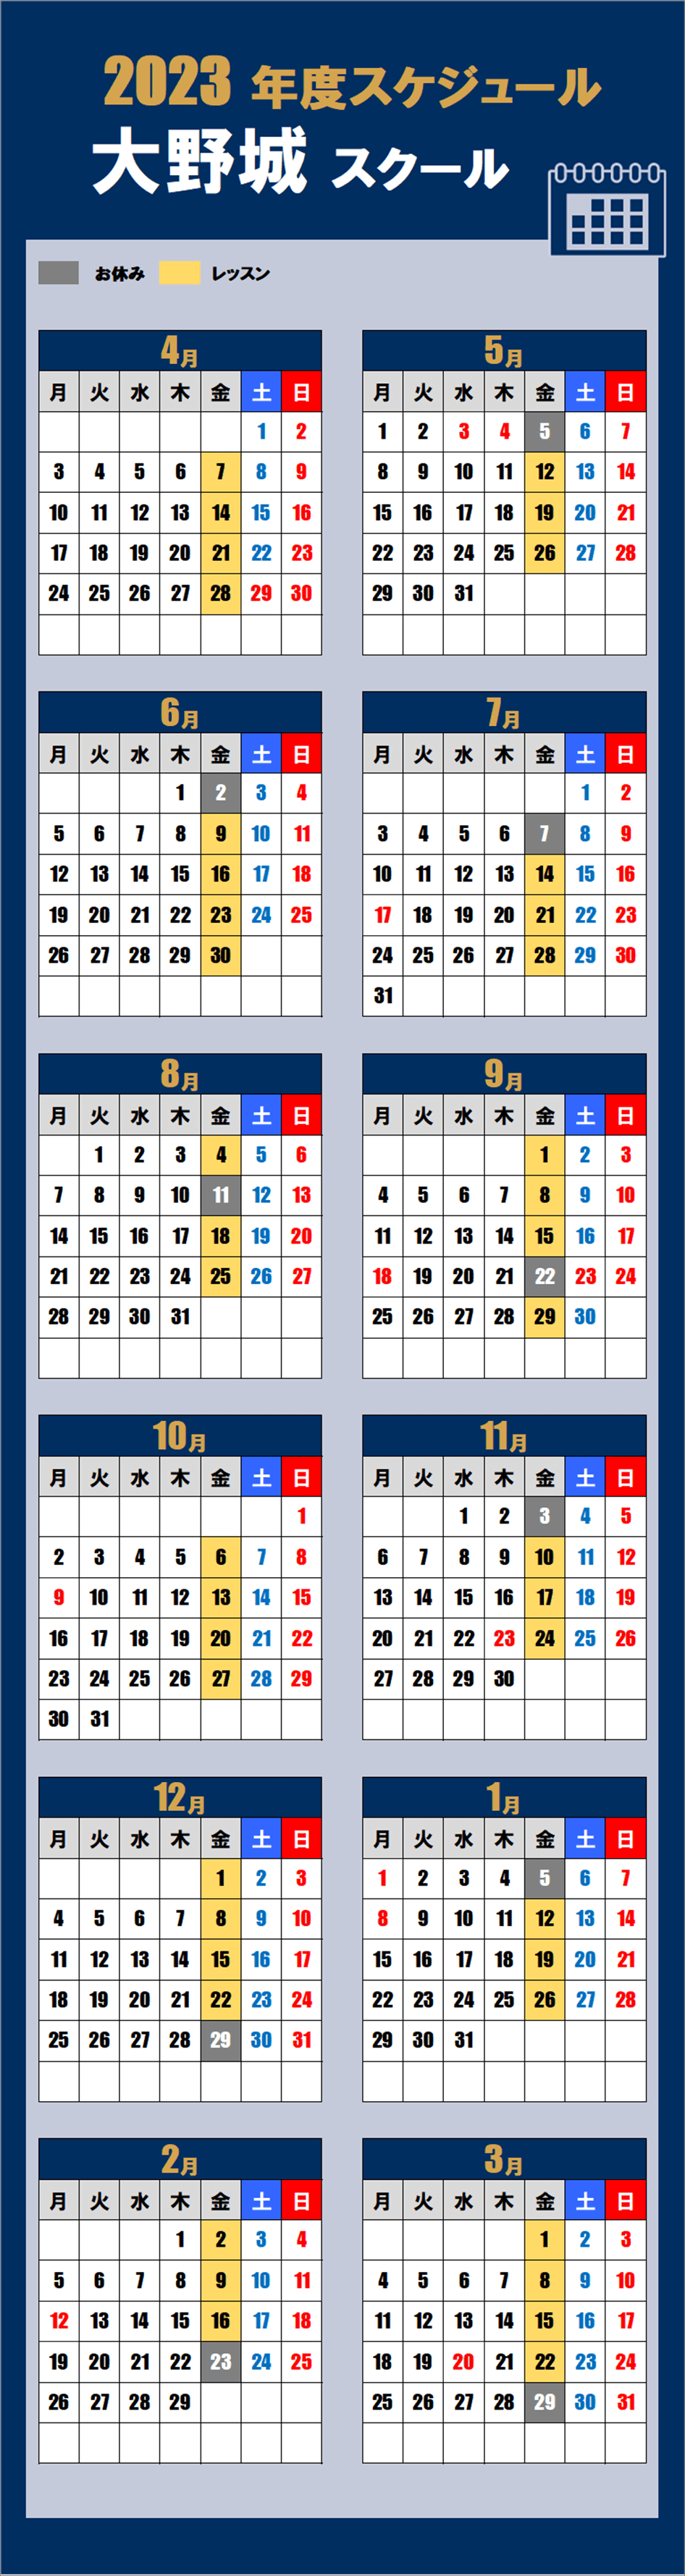 大野城スクールカレンダー